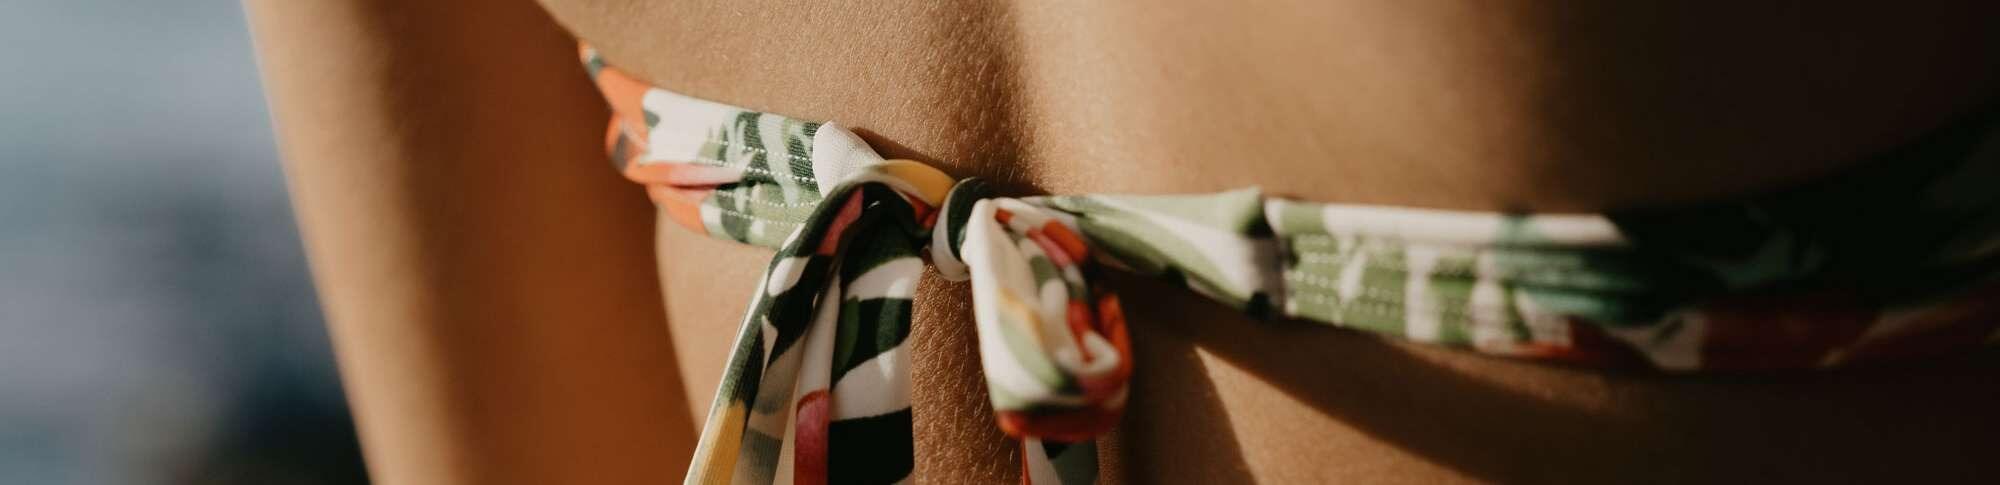 Swimsuit back-tie closeup